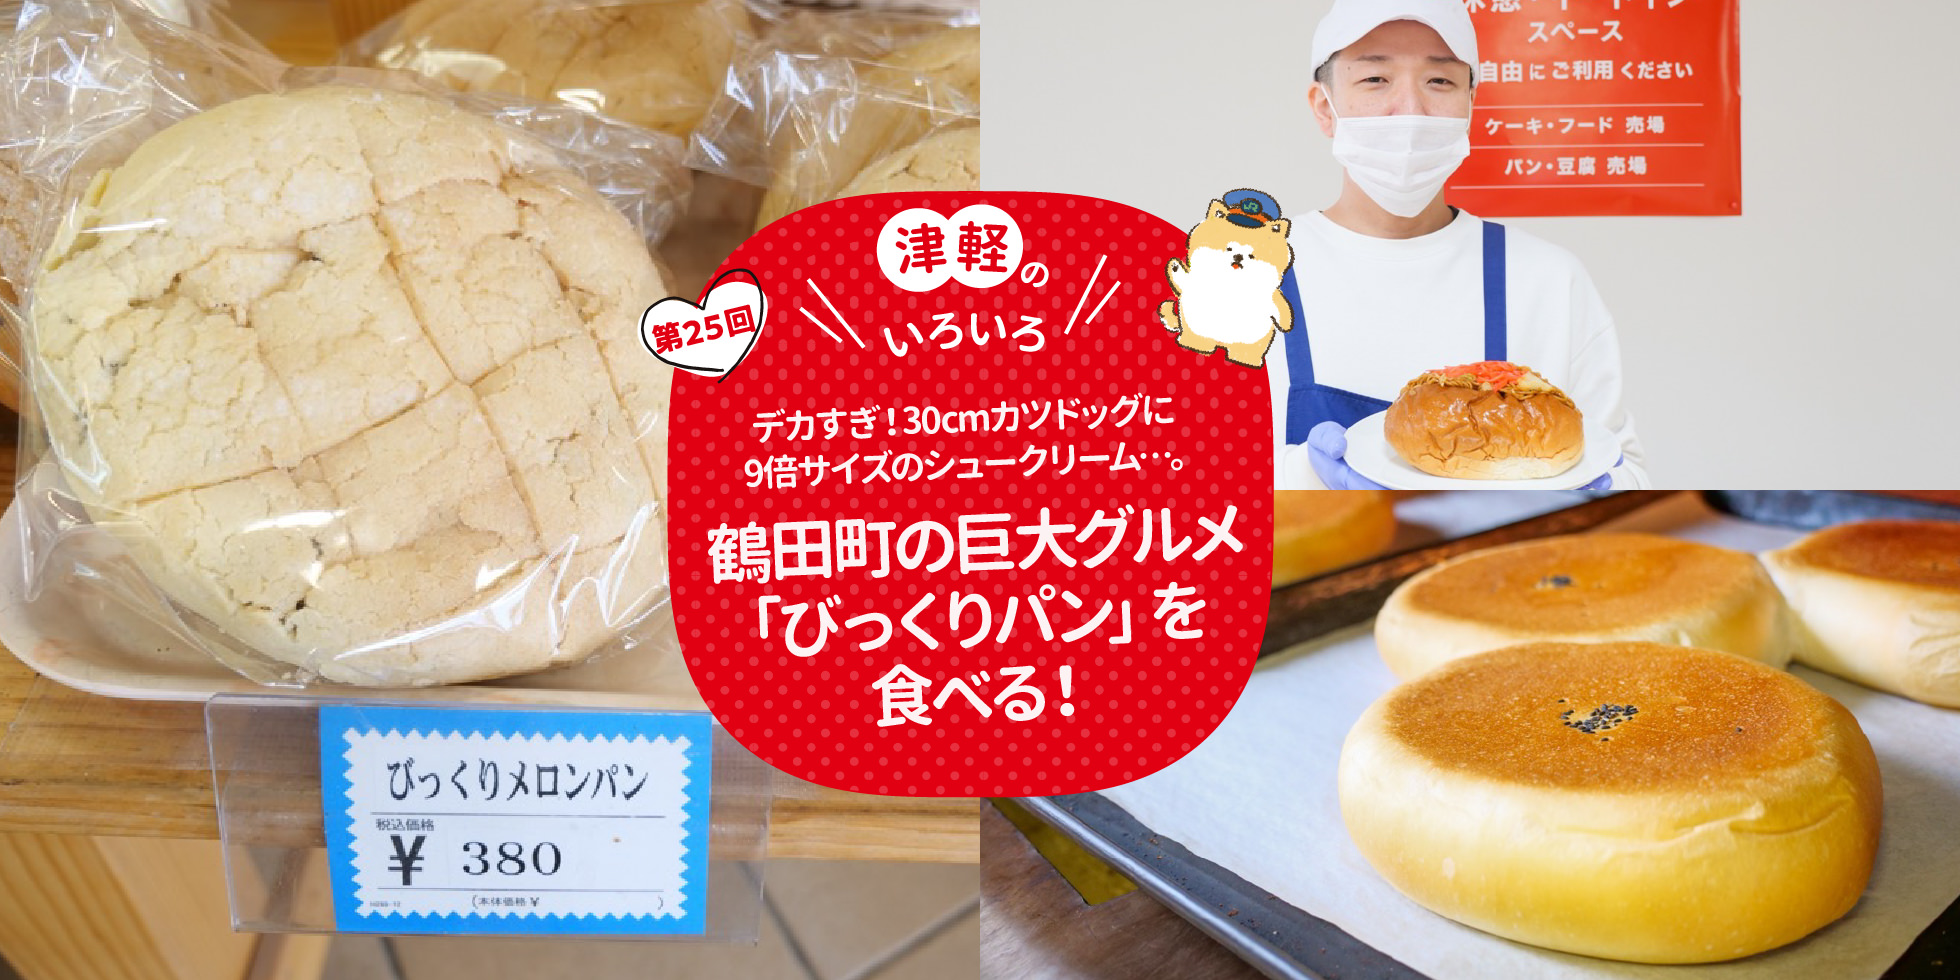 津軽のいろいろ デカすぎ！30cmカツドッグに9倍サイズのシュークリーム…。鶴田町の巨大グルメ「びっくりパン」を食べる！